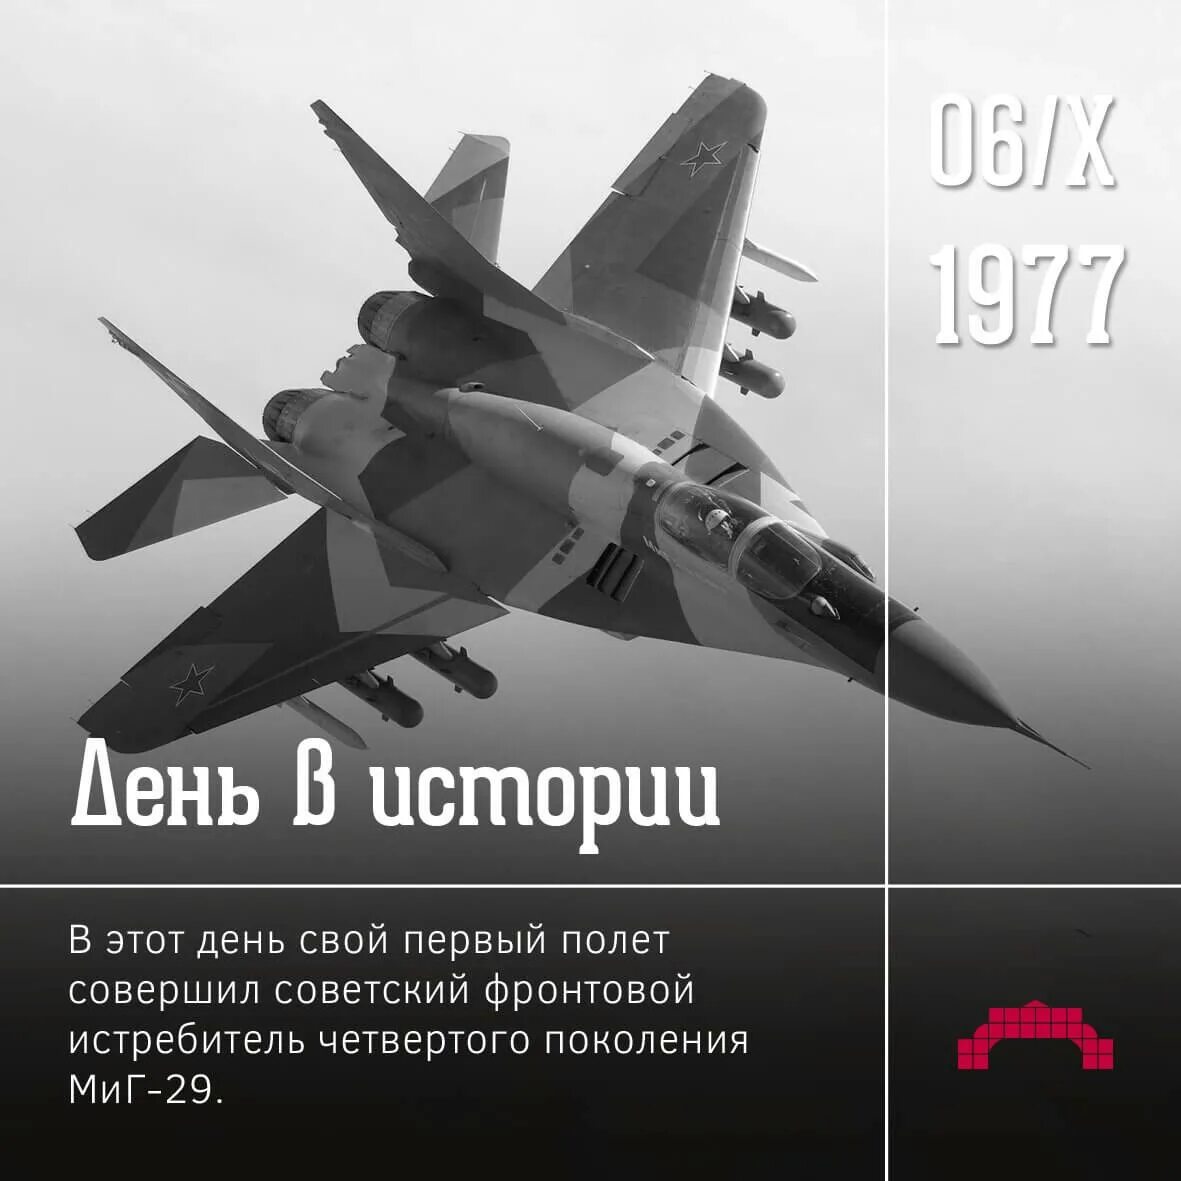 Даты 6 октября. 6 Октября 1977 года состоялся первый полет истребителя миг-29. 1977 — Первый полёт советского истребителя четвёртого поколения Су-27.. Миг 29 1977. Многоцелевой истребитель четвертого поколения.